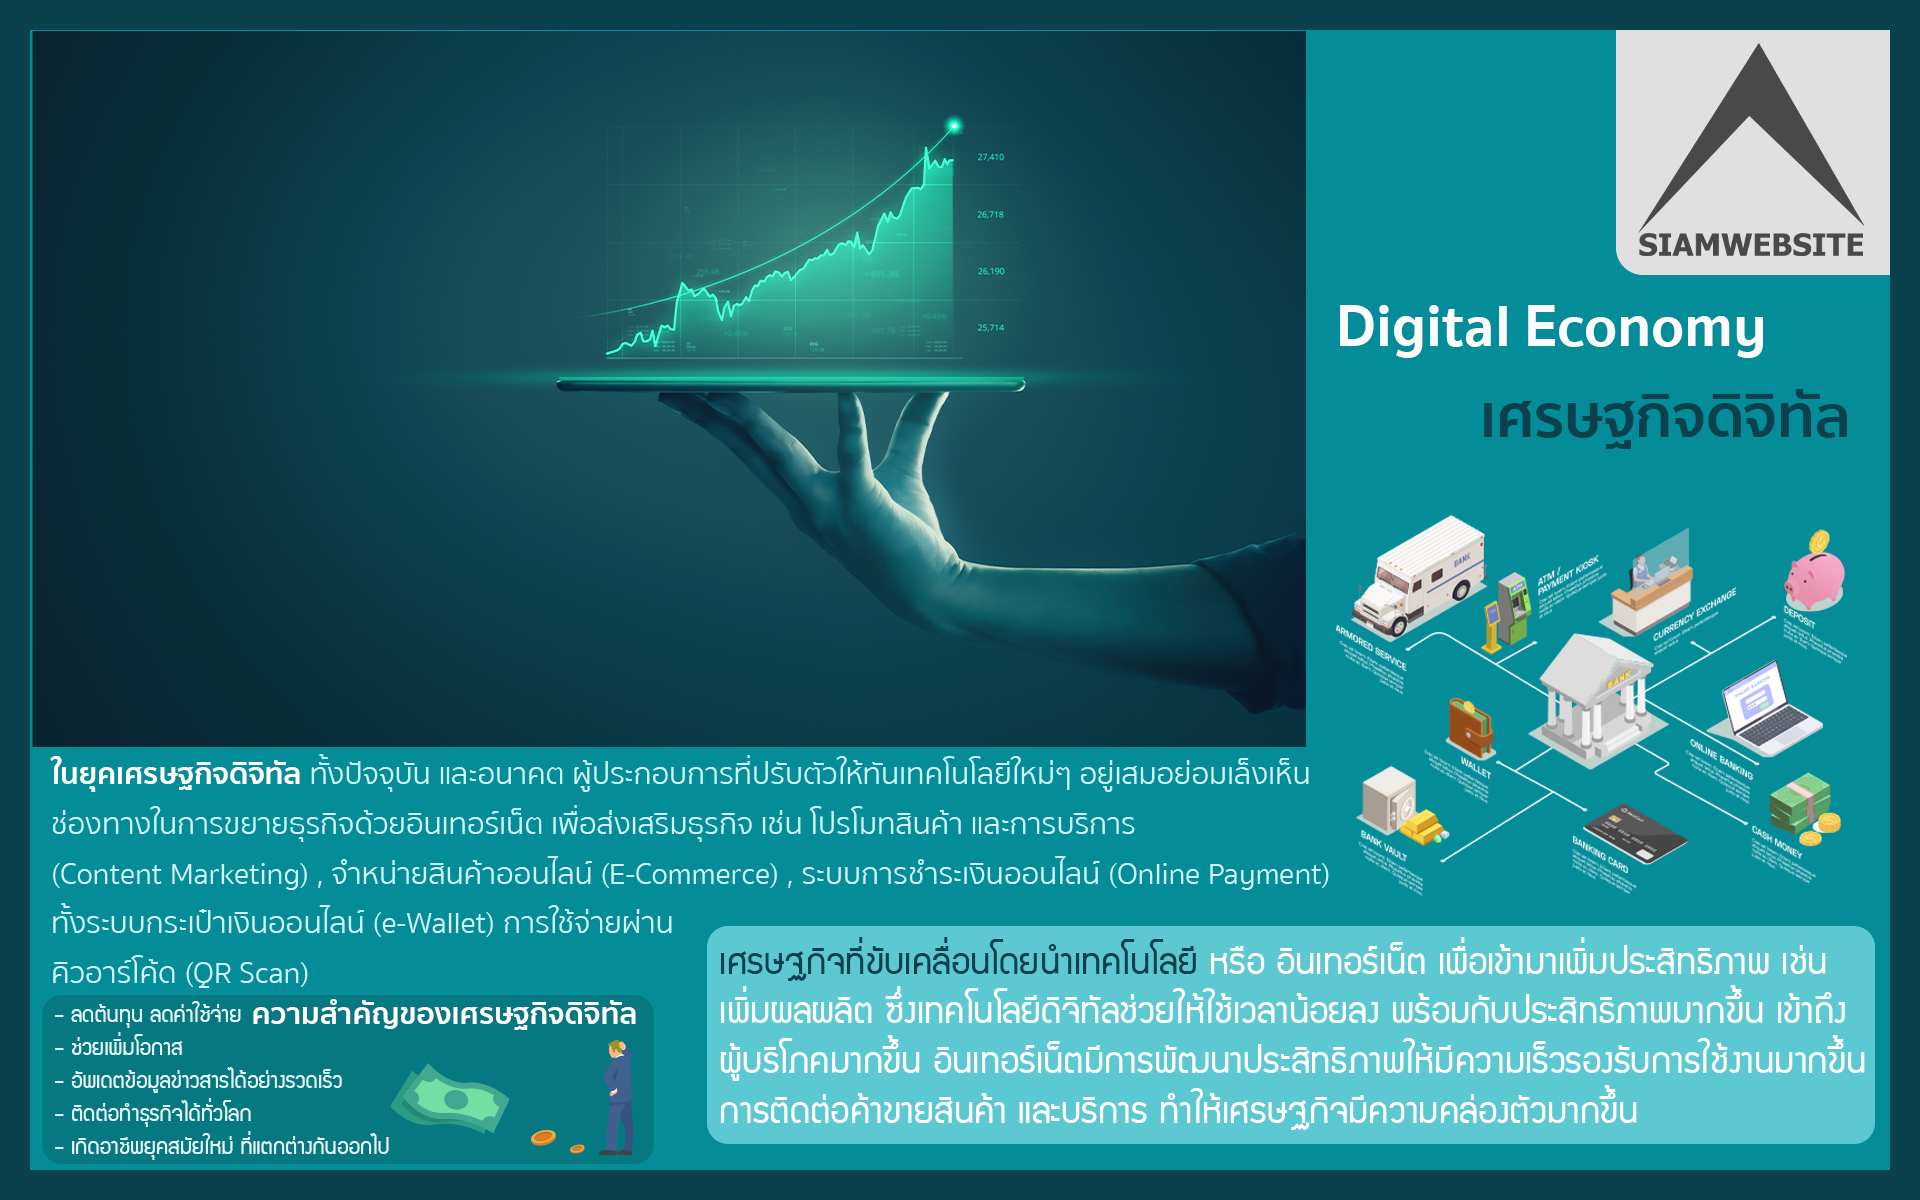 รับทําเว็บไซต์ เว็บขยายสายงาน Digital Economy เศรษฐกิจดิจิทัล | TTT-WEBSITE 